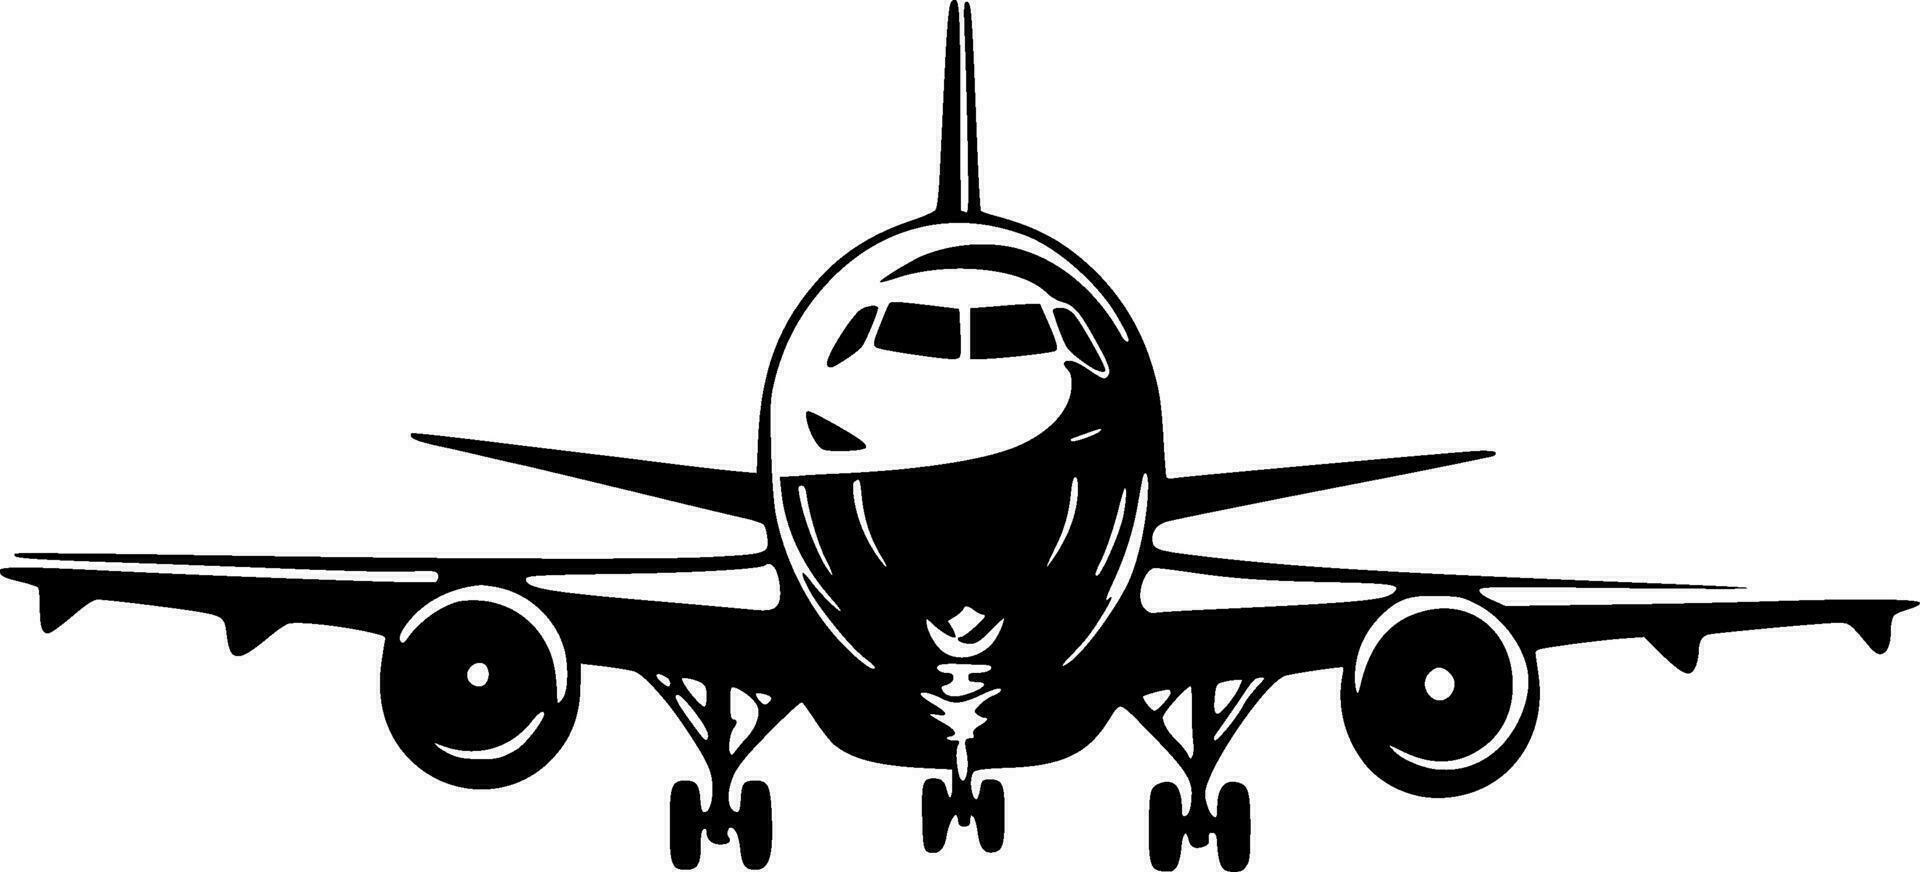 avion - noir et blanc isolé icône - vecteur illustration